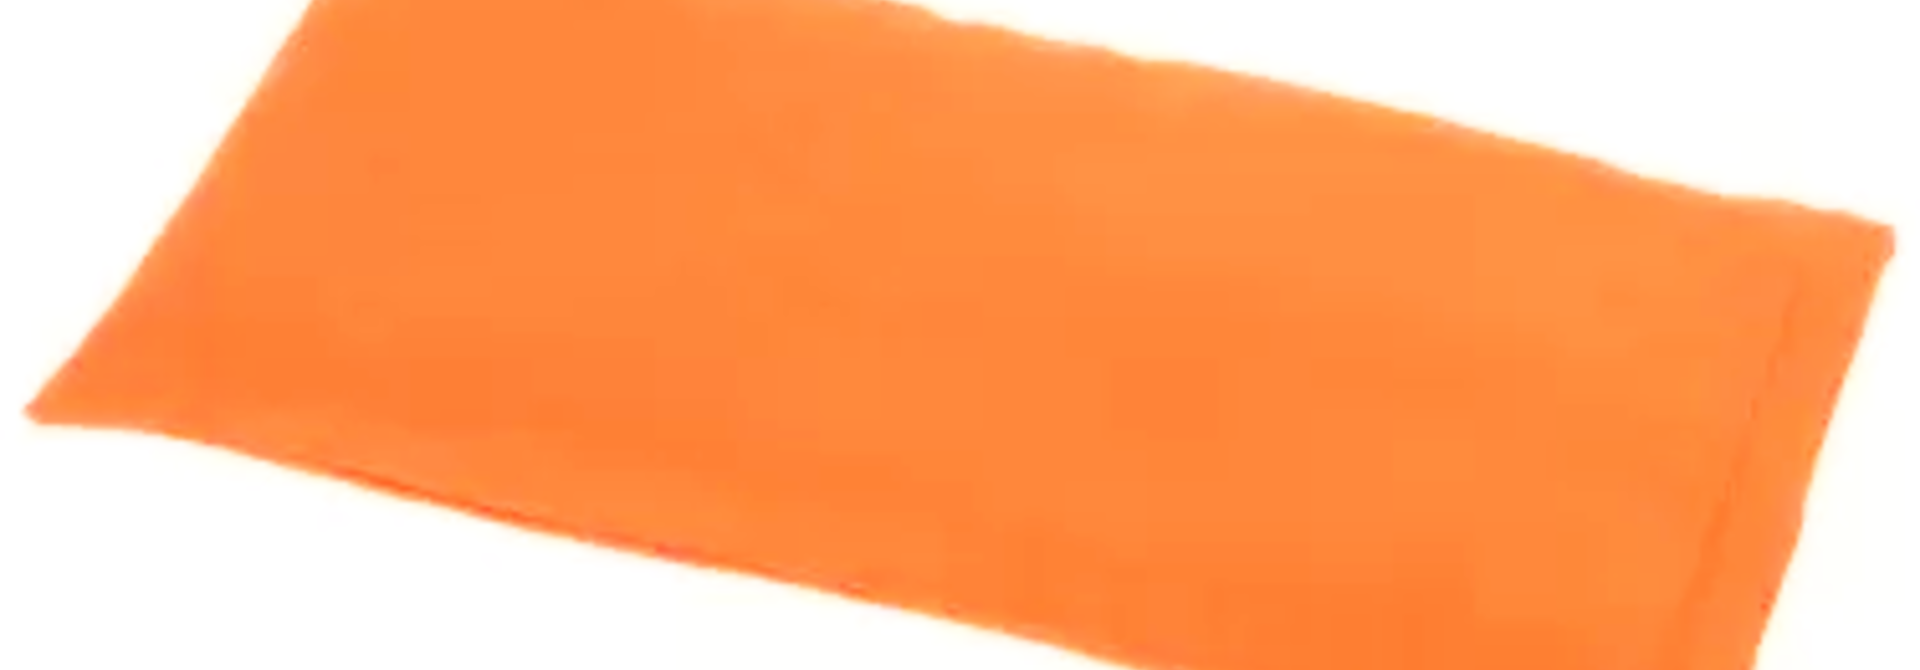 Yogisha Meditation Bench Cushion Deluxe - Orange